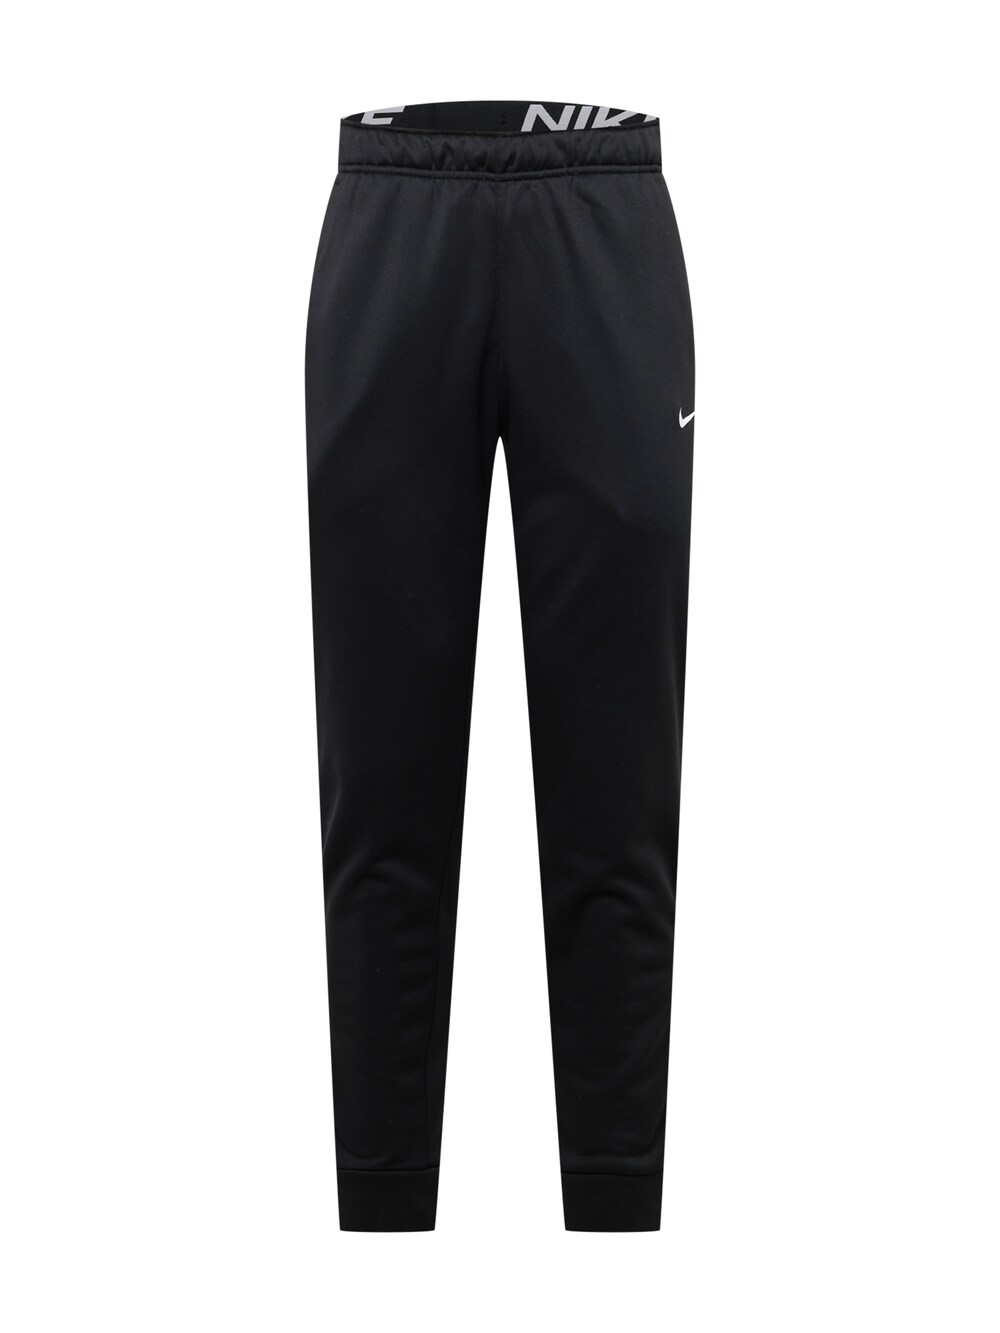 Зауженные тренировочные брюки Nike, черный зауженные тренировочные брюки esprit черный